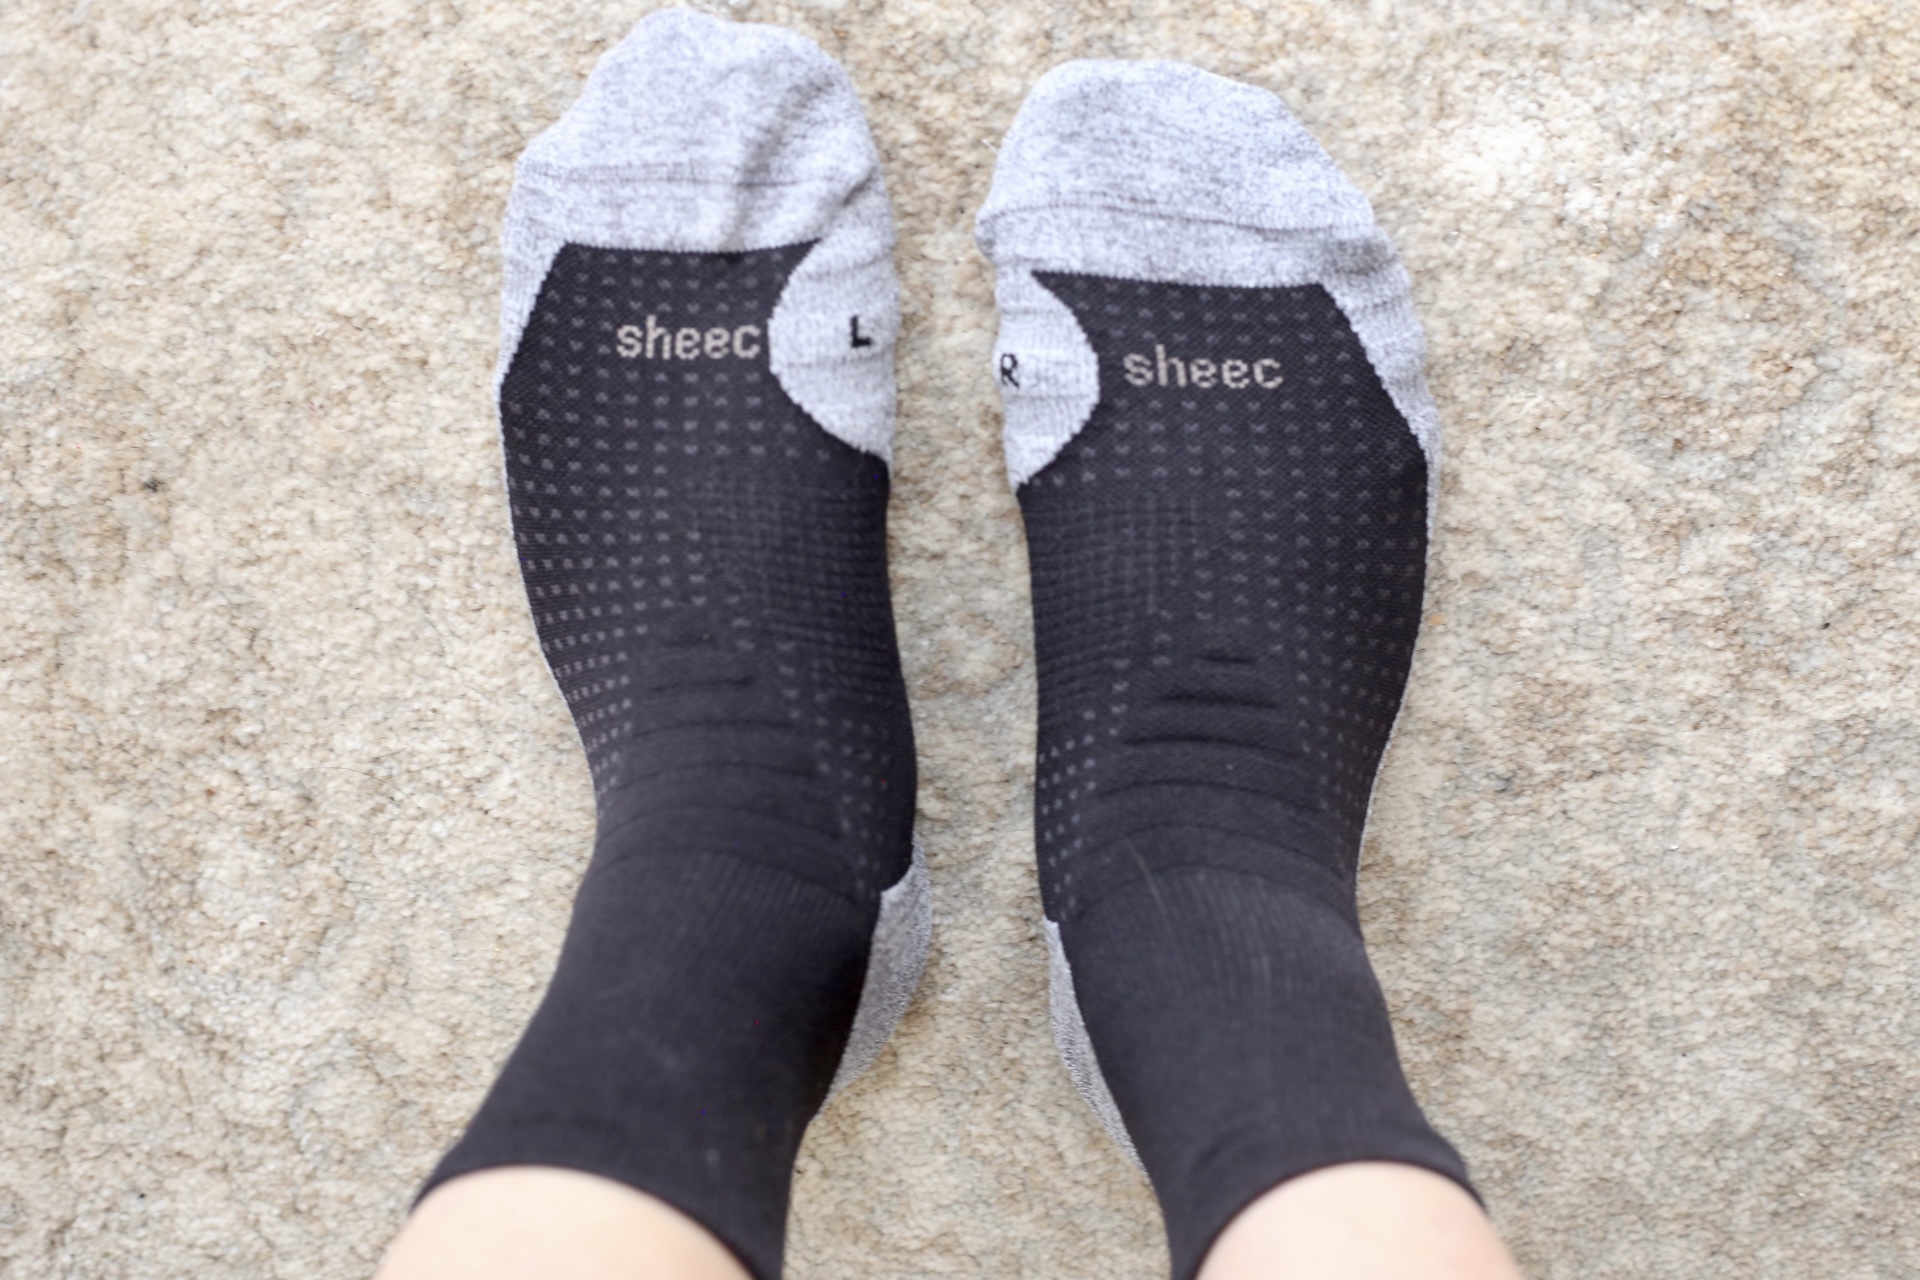 sheec compression socks